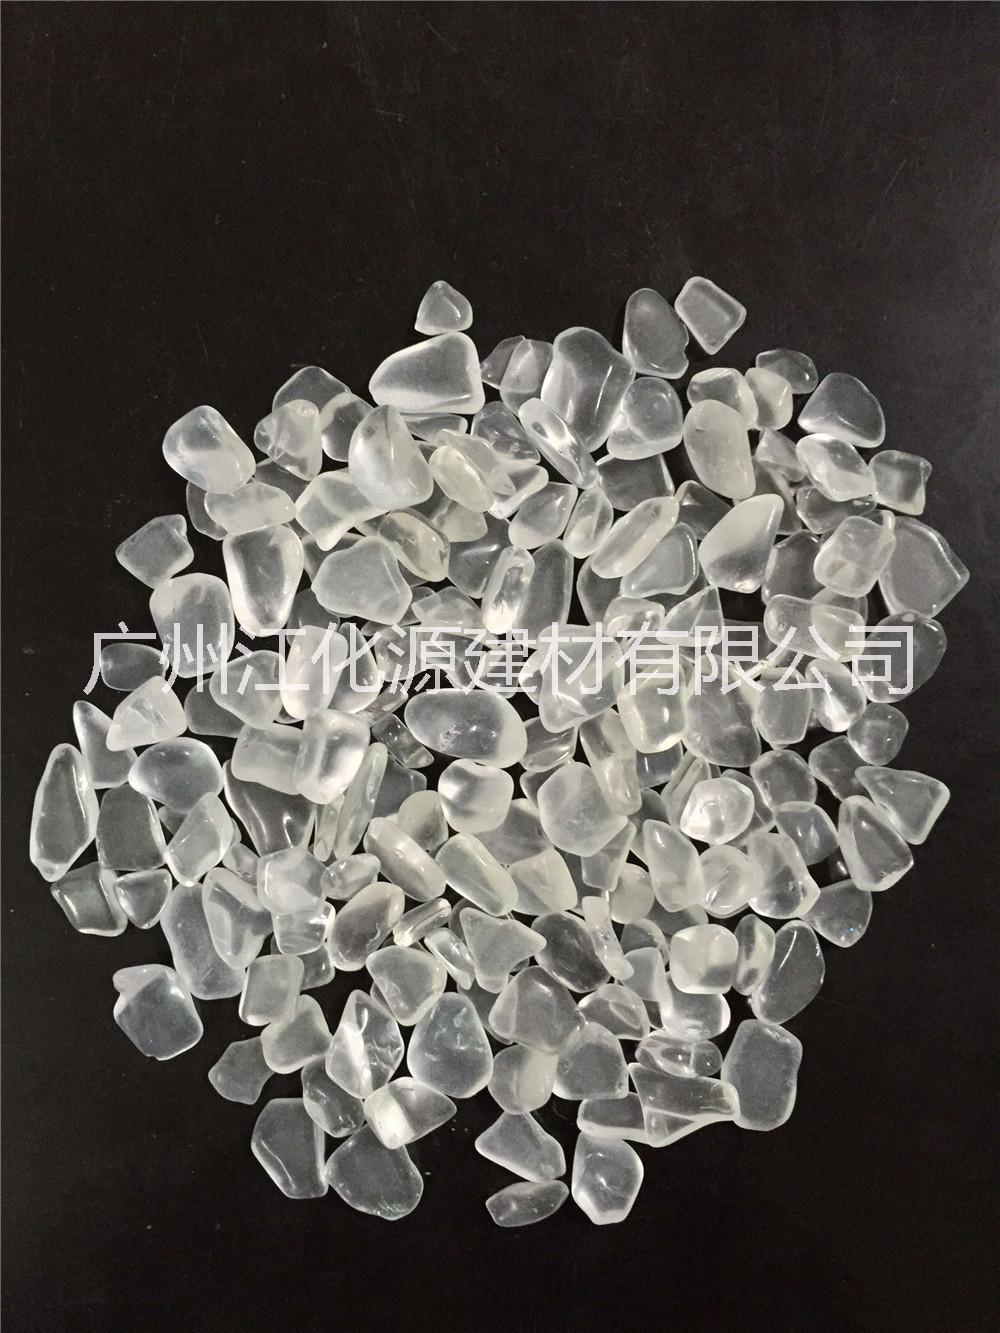 广州全国白水晶厂家直销  大量供应人造石、石英石天然石白水晶厂家直销 广州全国白水晶厂家直销